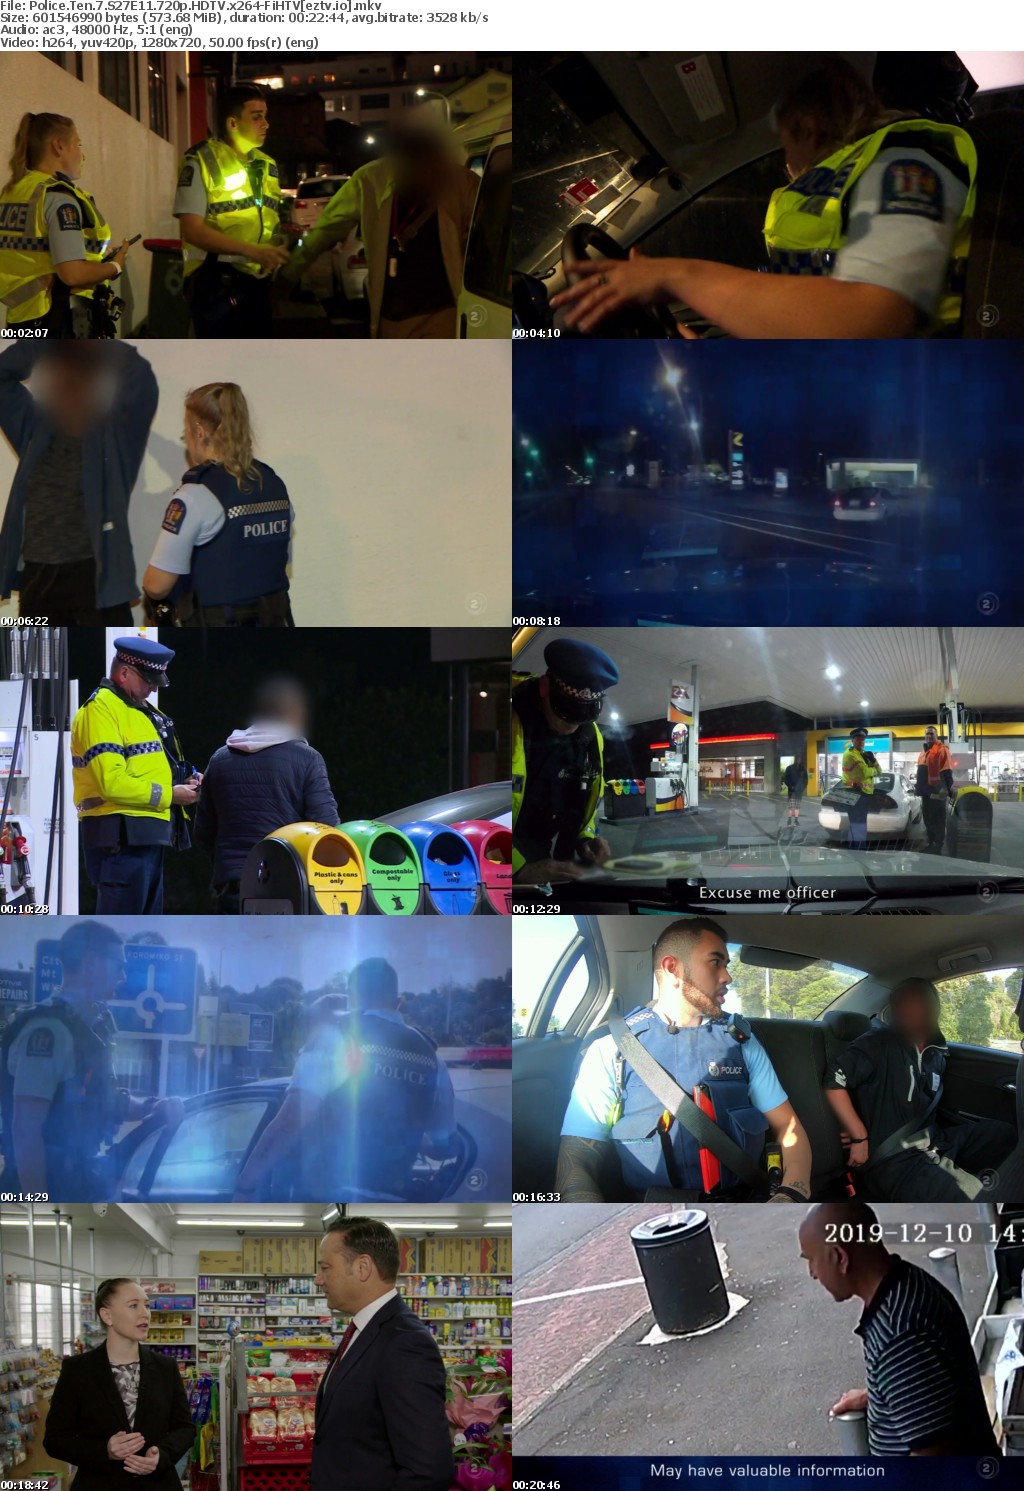 Police Ten 7 S27E11 720p HDTV x264-FiHTV